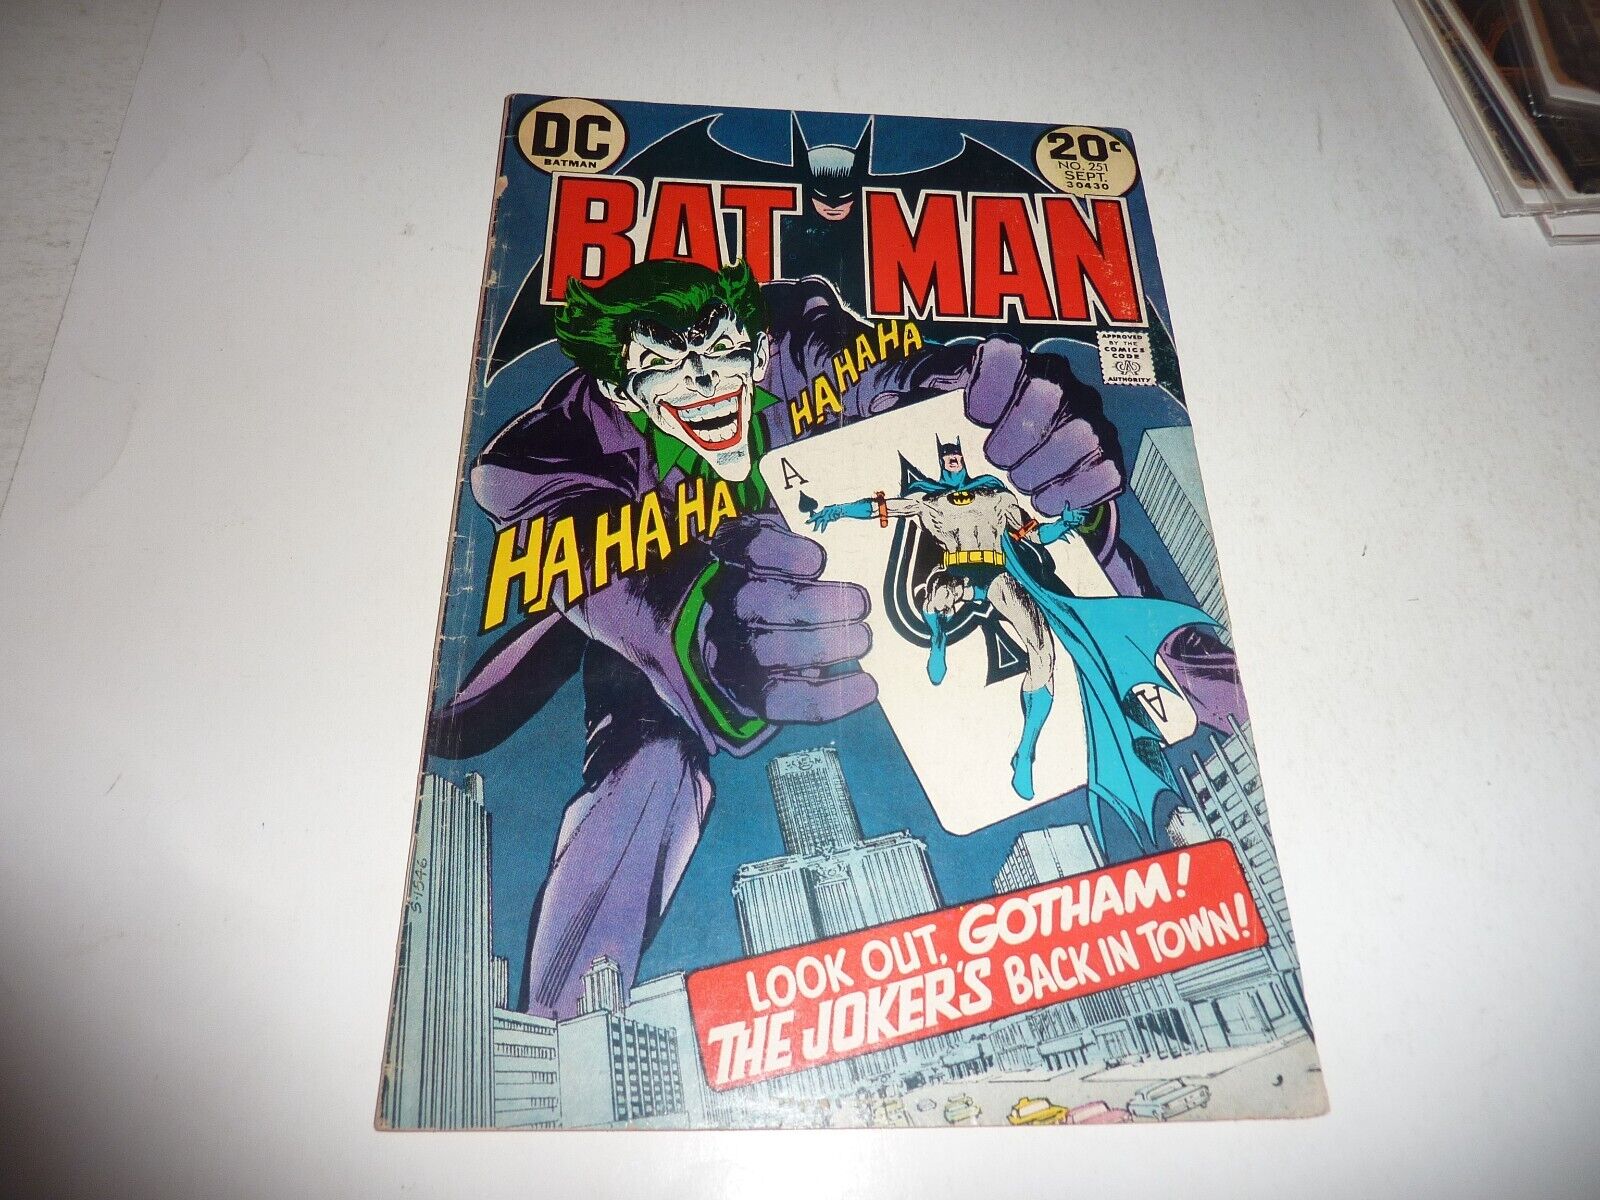 BATMAN #251 DC Comics 1973 Classic NEAL ADAMS JOKER Cover VG- 3.5 Complete Copy